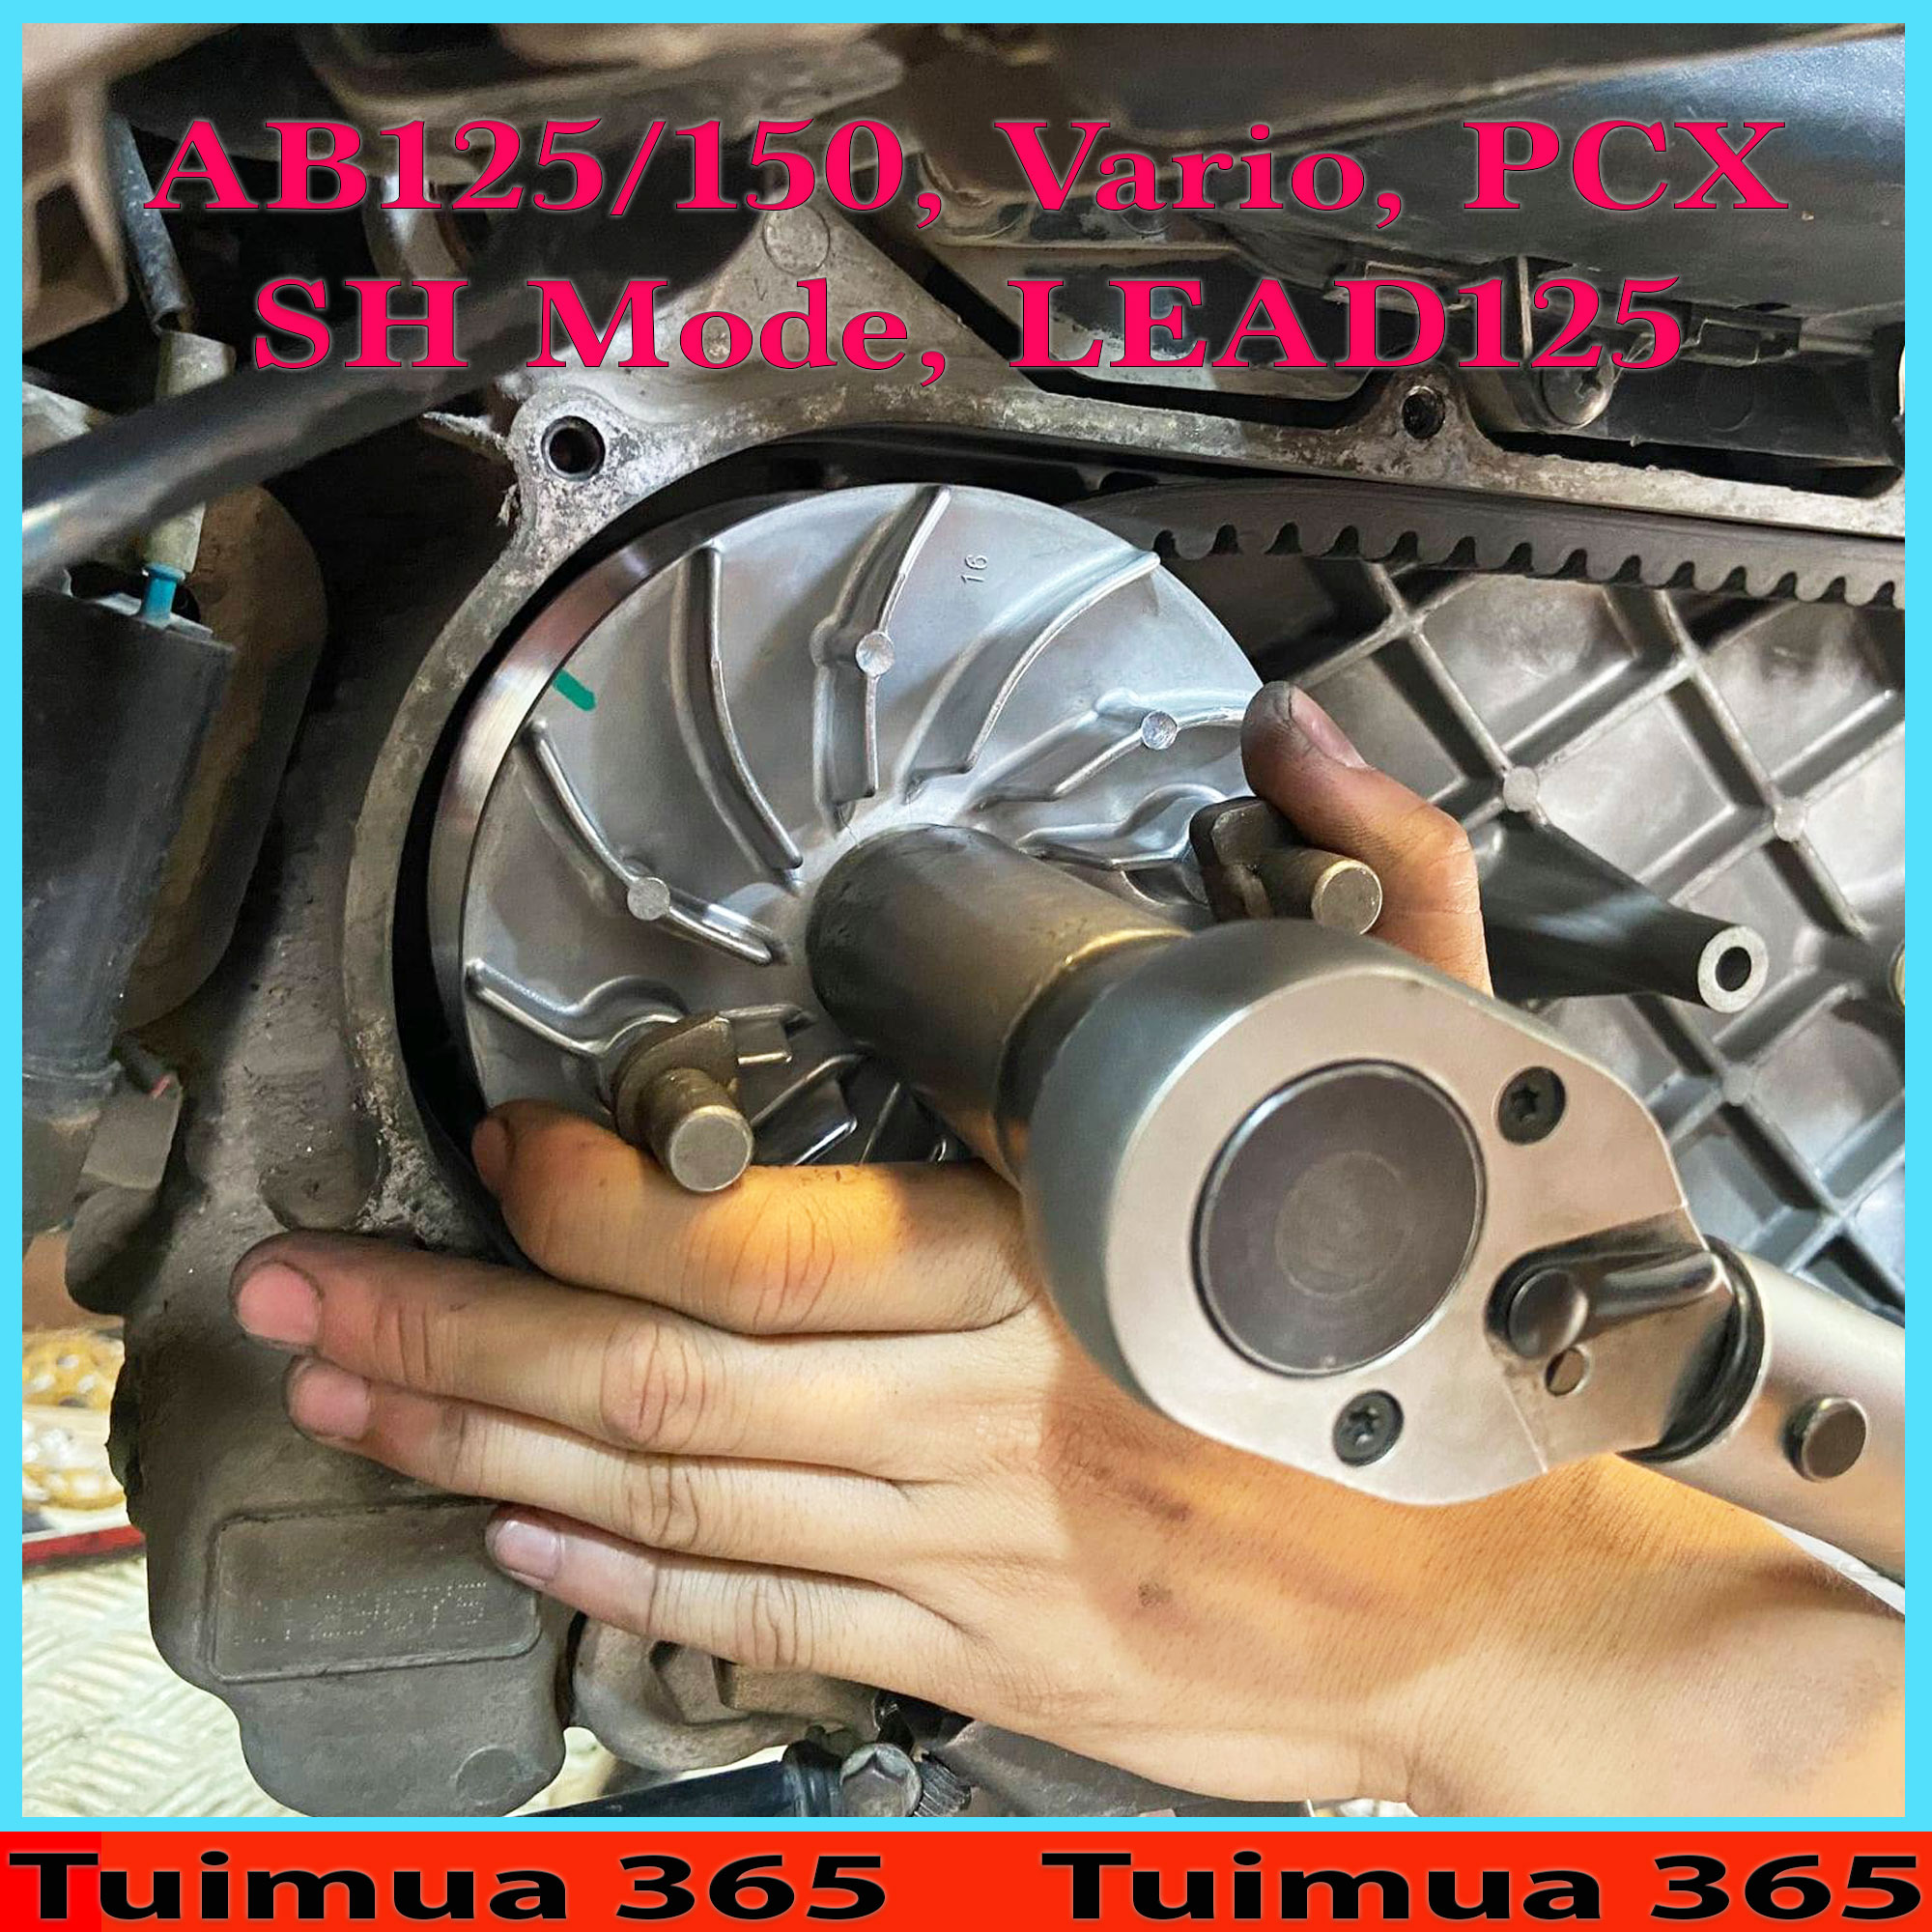 Full Bộ Nồi Trước Dành Cho Honda Vario, AirBlade 125, Click, Sh Mode, Lead 125, PCX